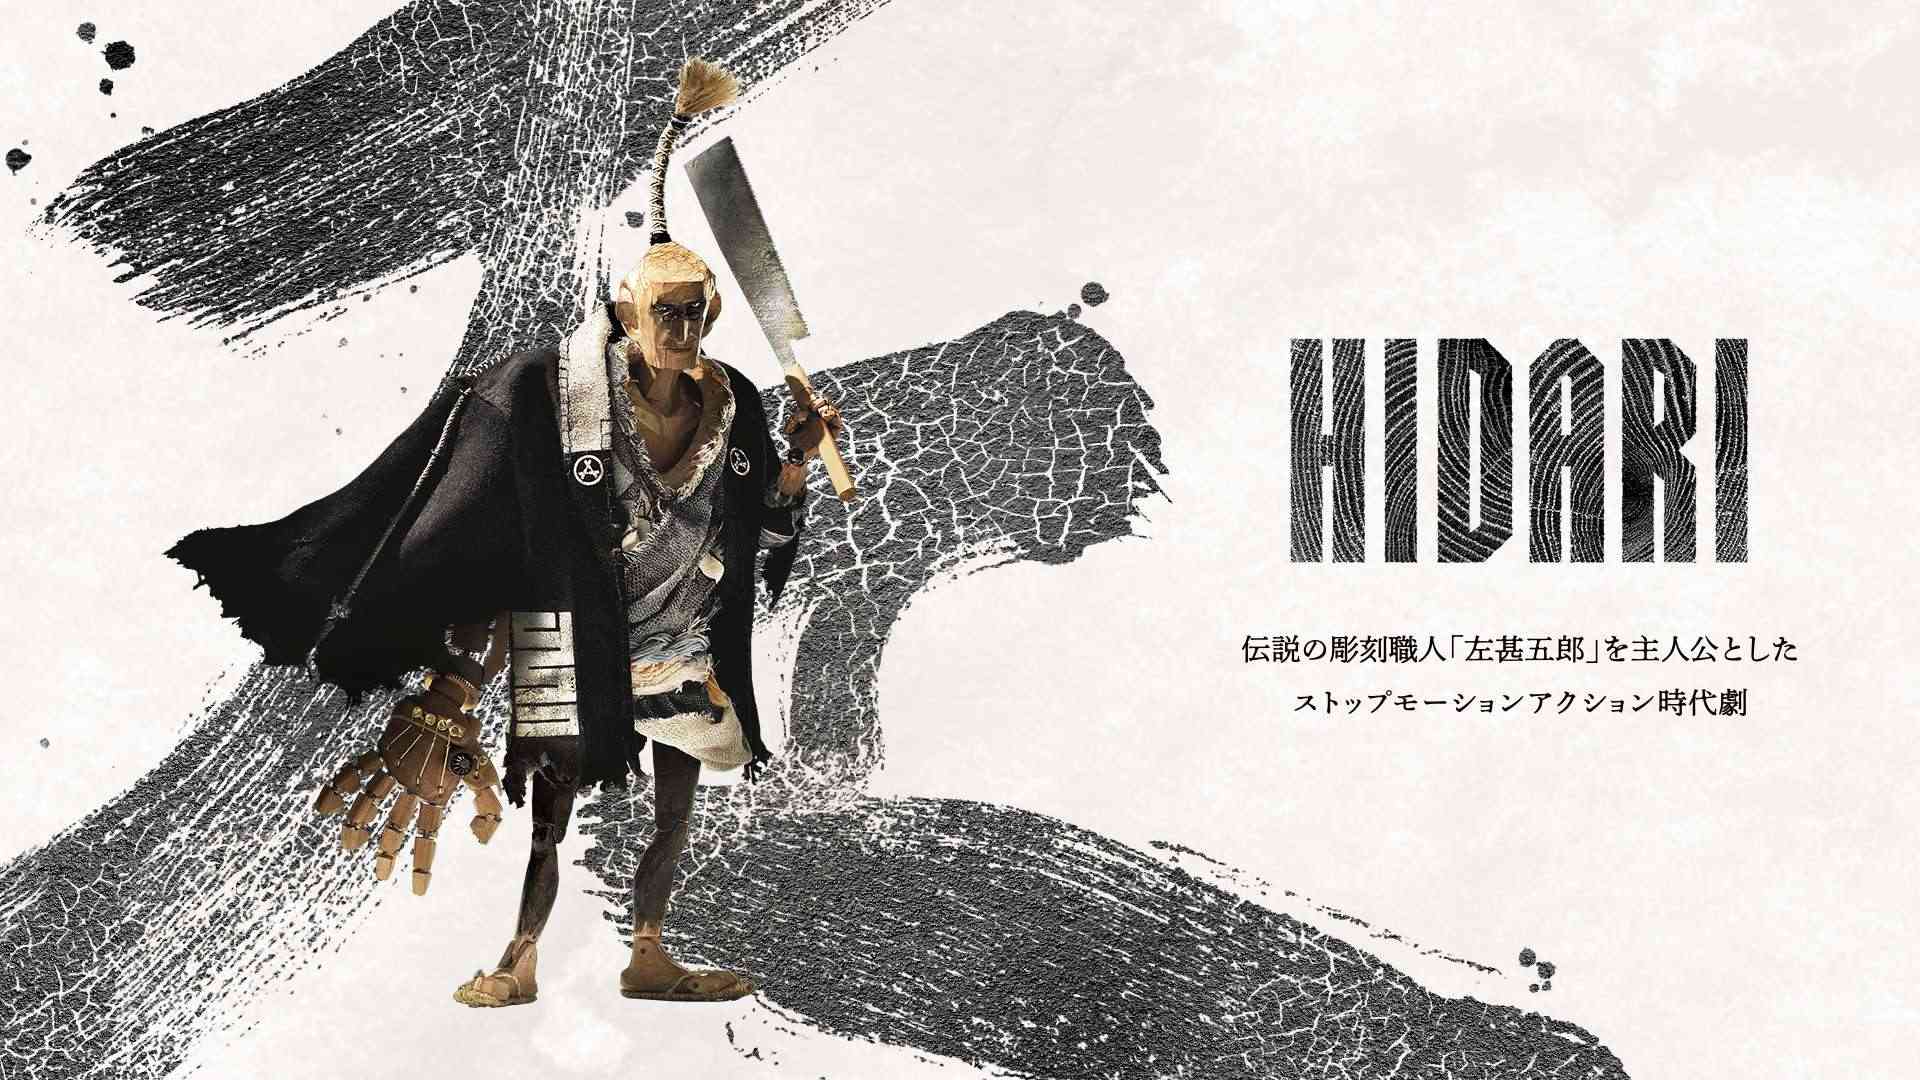 Bộ phim hoạt hình HIDARI trở thành cơn sốt sau khi phát hành đoạn phim giới thiệu HIDARI-1-game4v-1679884765-84